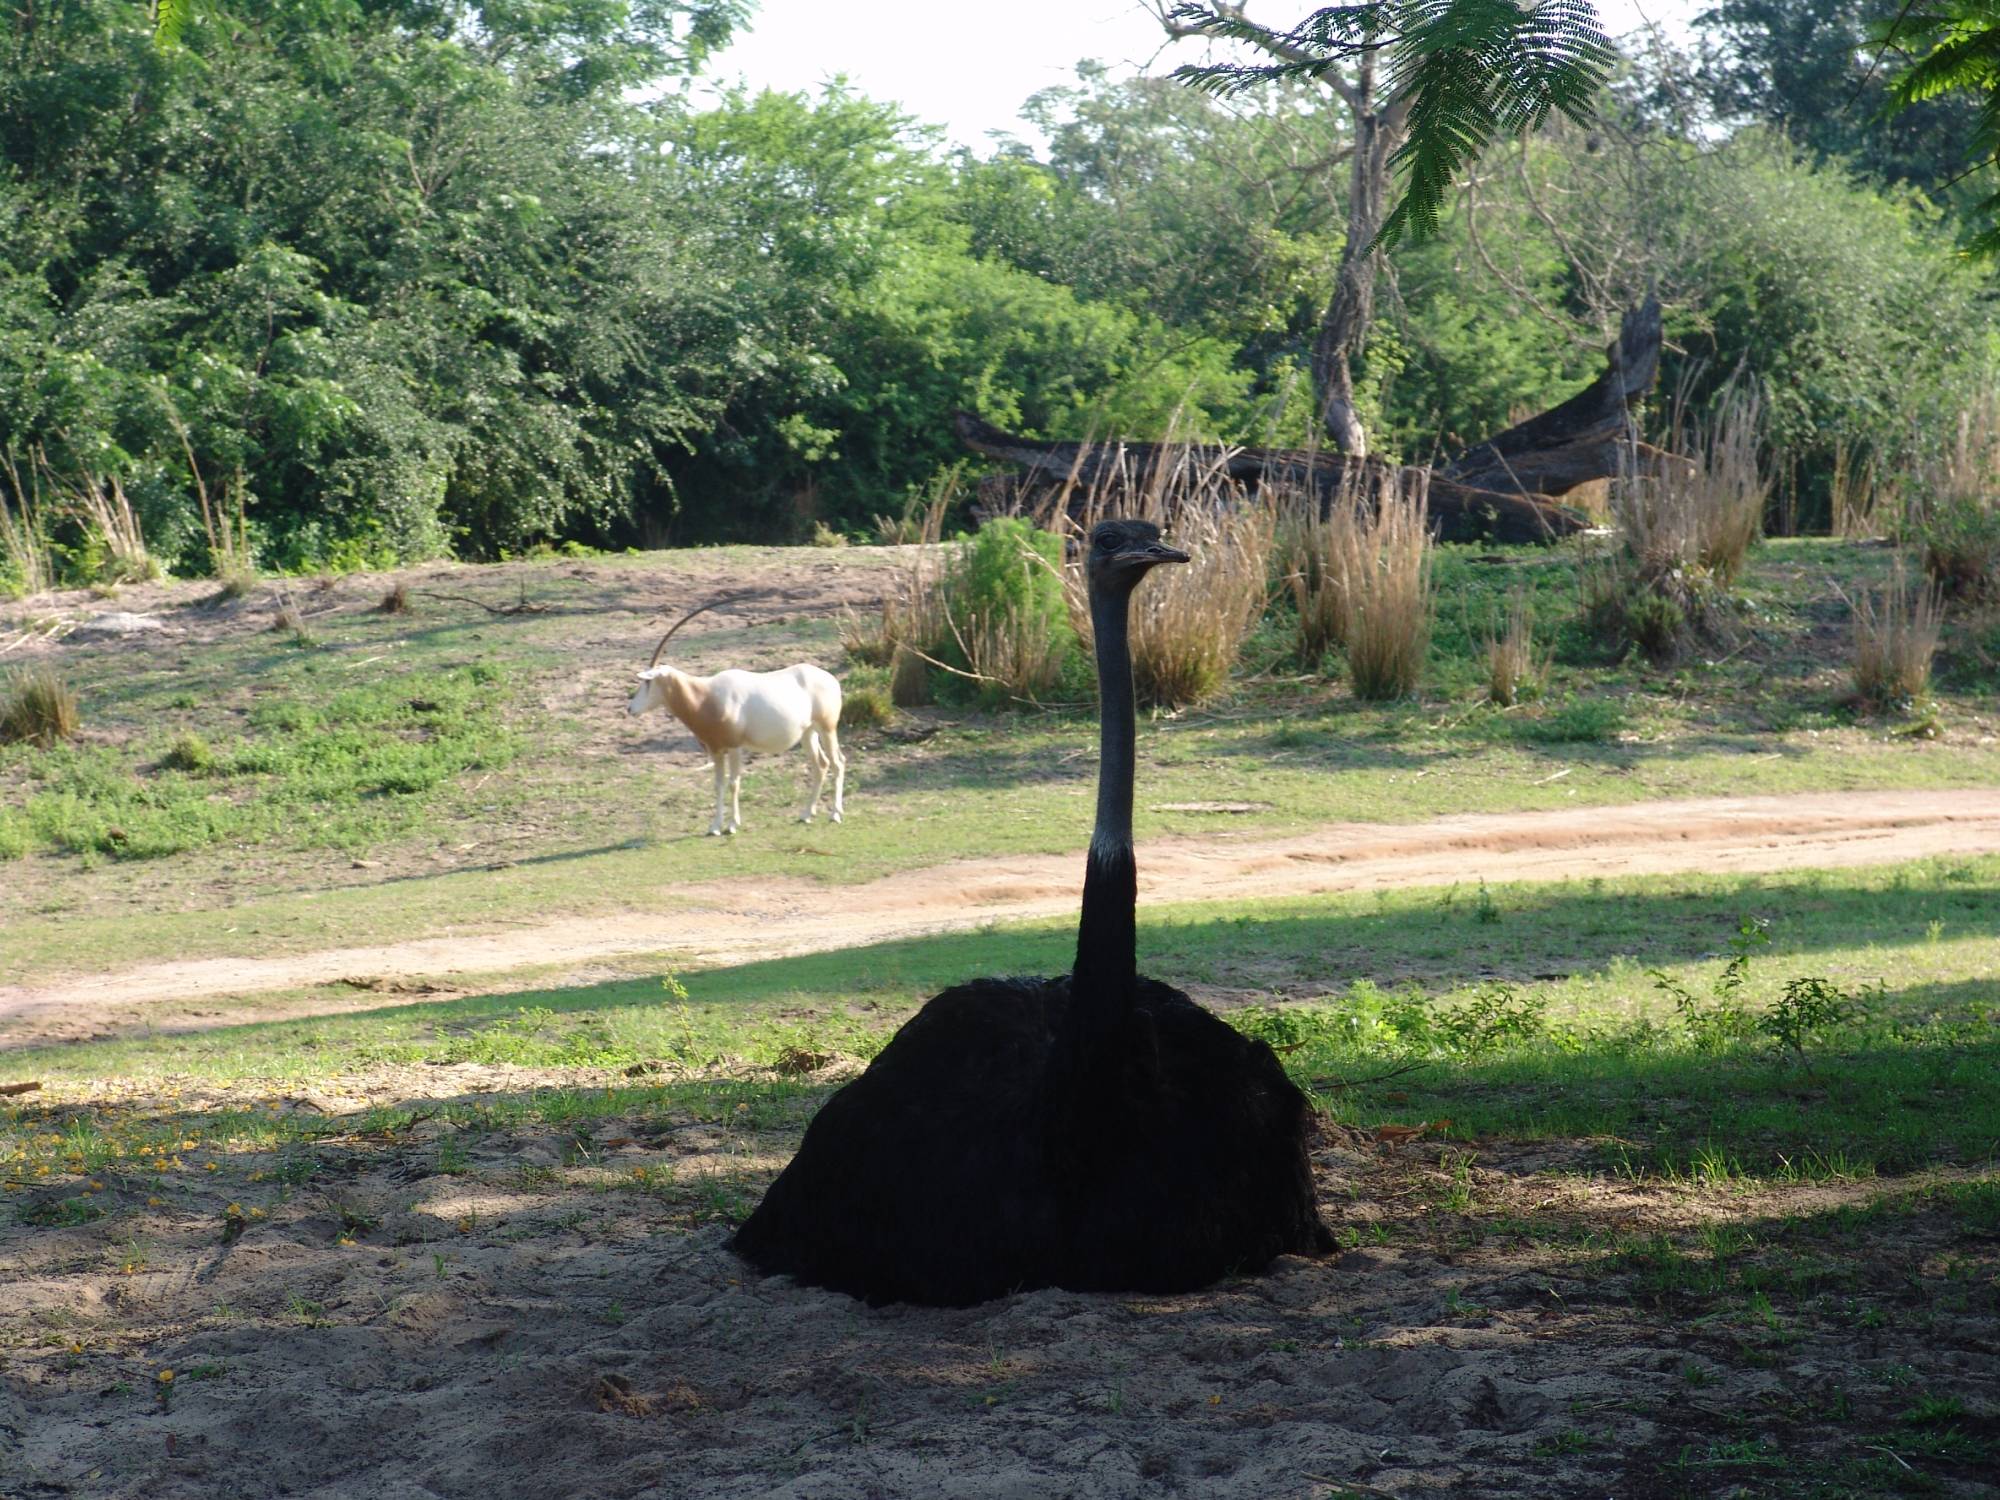 Animal Kingdom - ostrich on safari